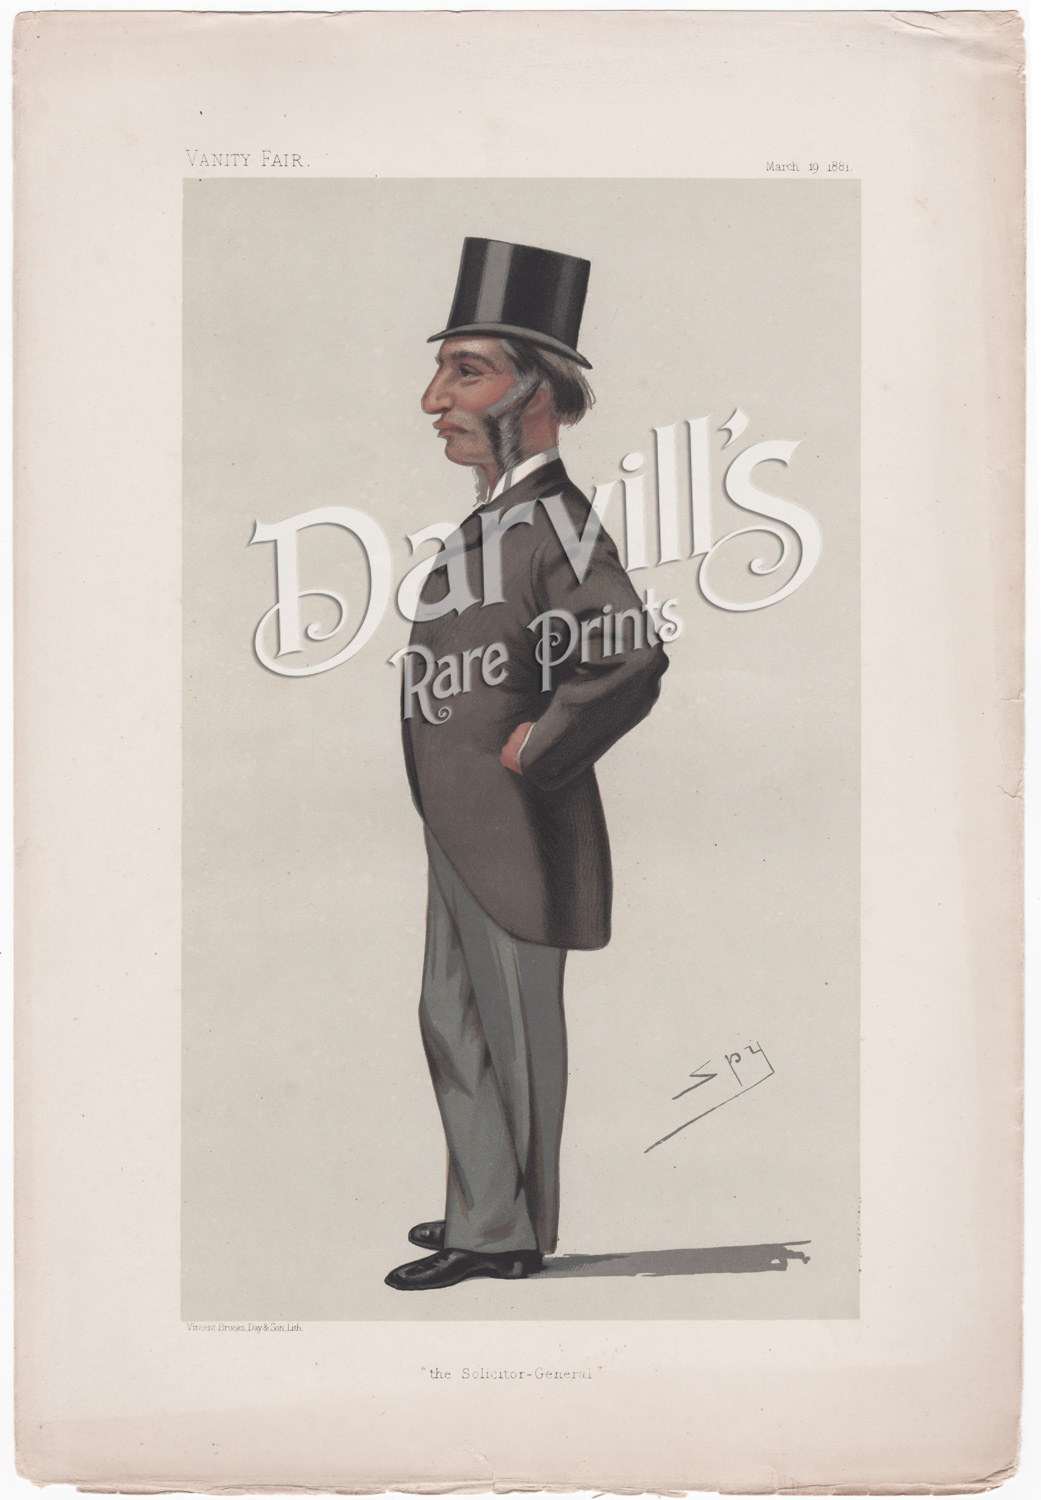 Sir Farrer Herschell March 19 1881